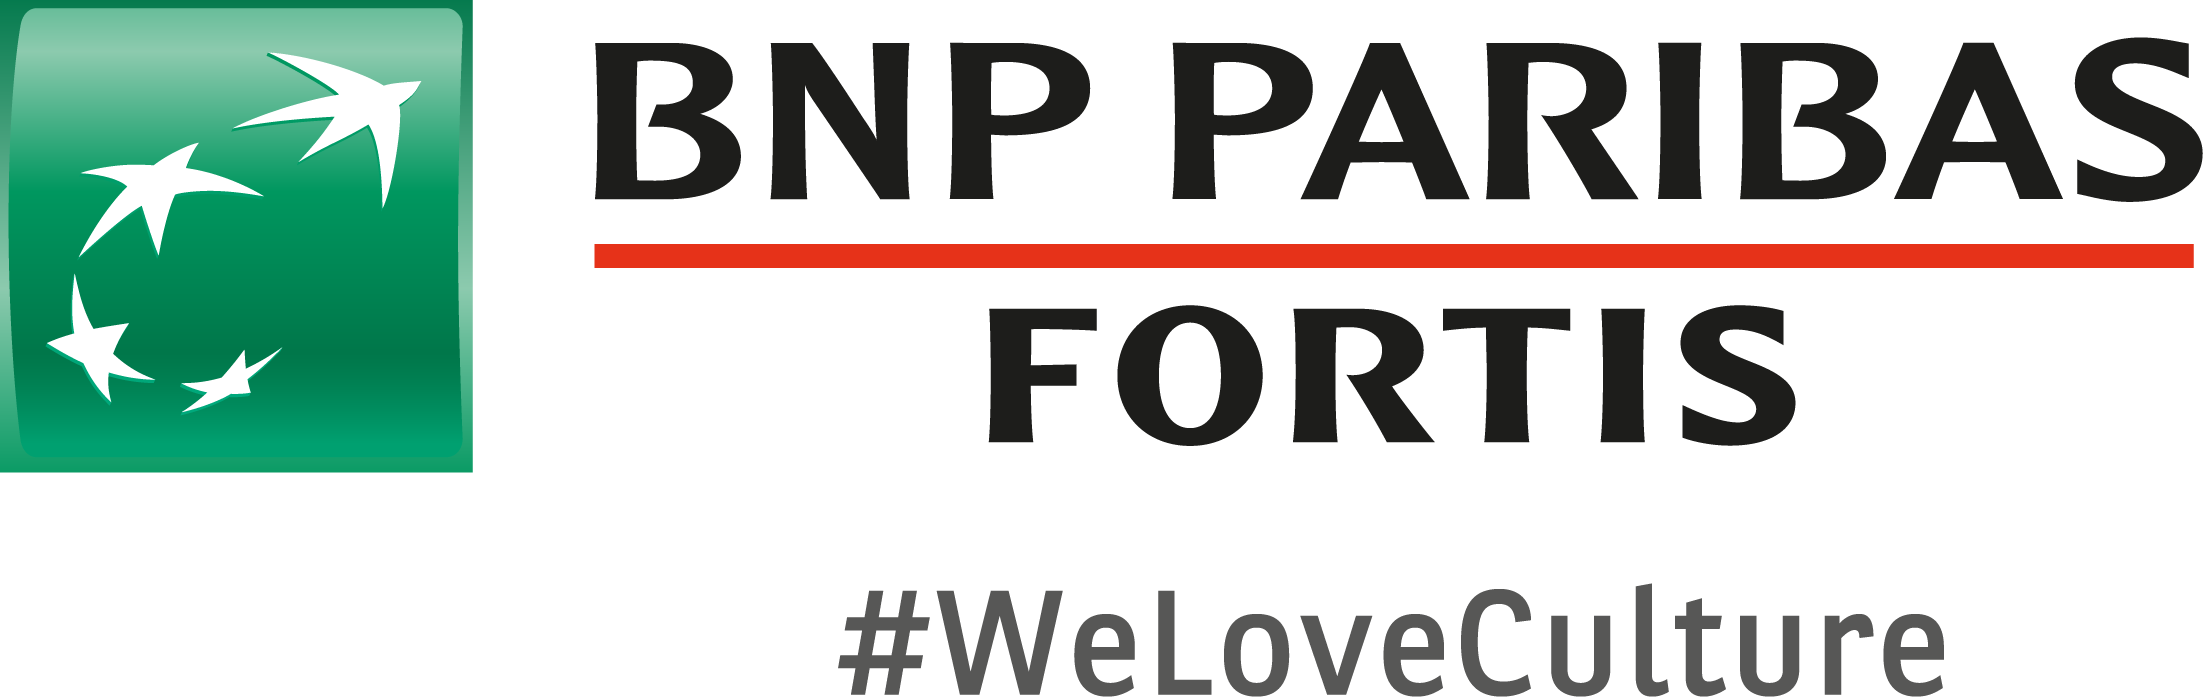 BNPPF_Logo_WeLoveCulture_Hor_sRGB.png